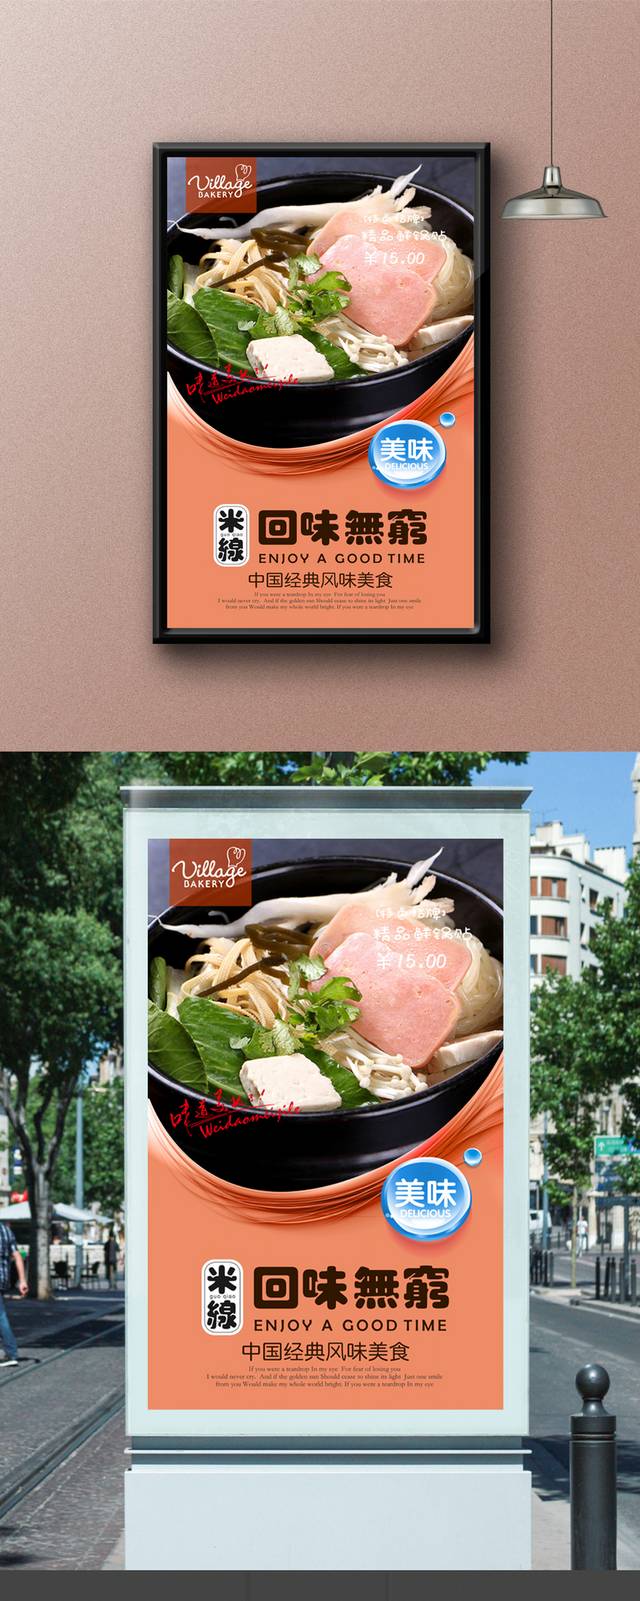 高清砂锅米线促销海报设计psd